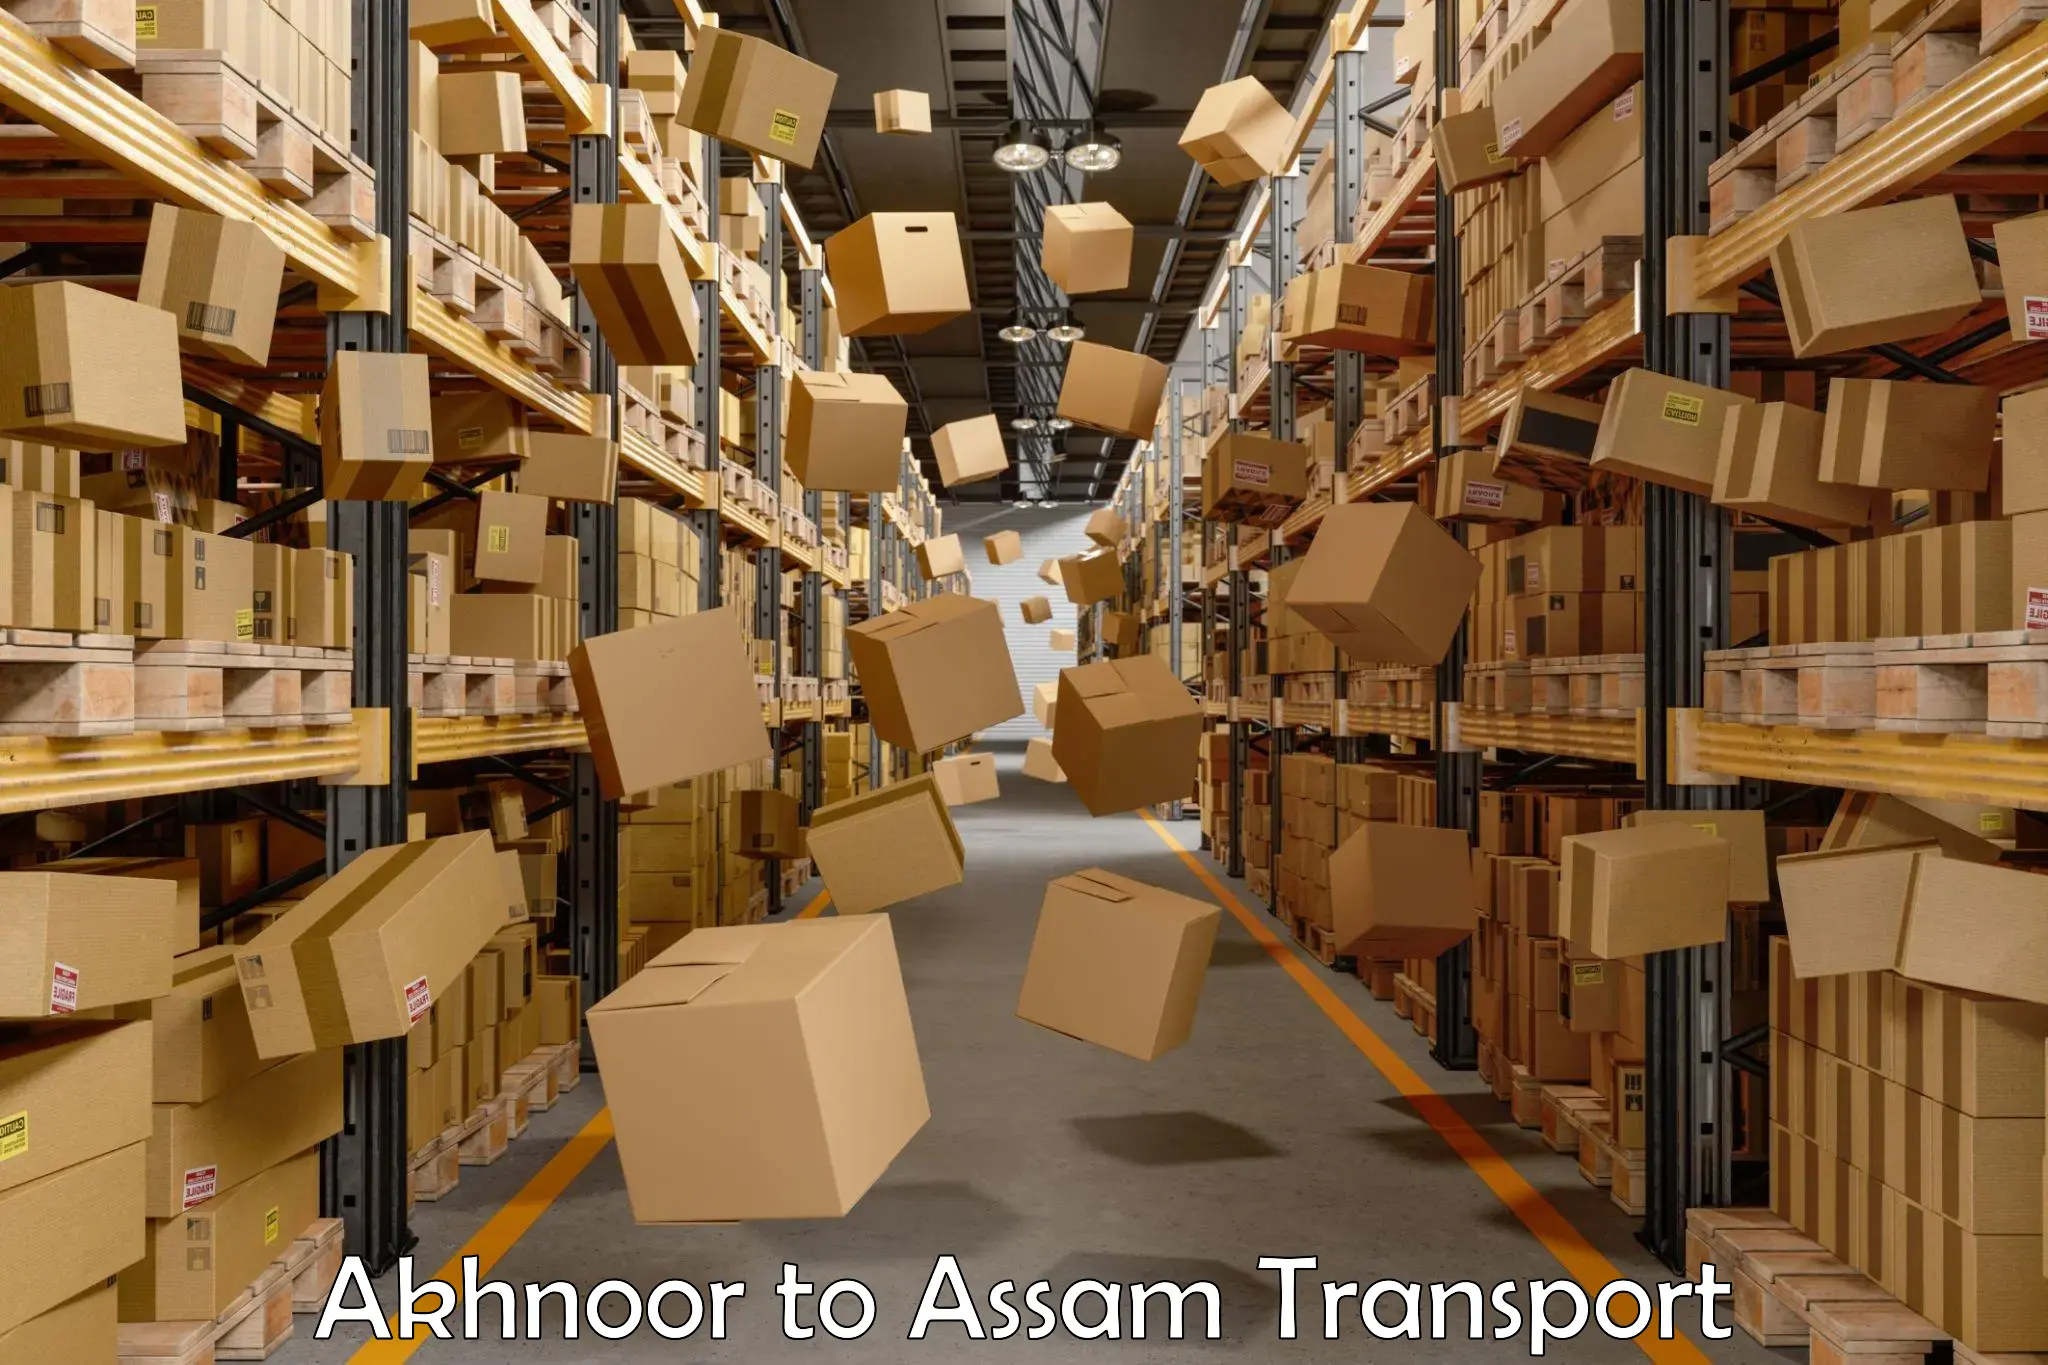 Transport in sharing Akhnoor to Balighat